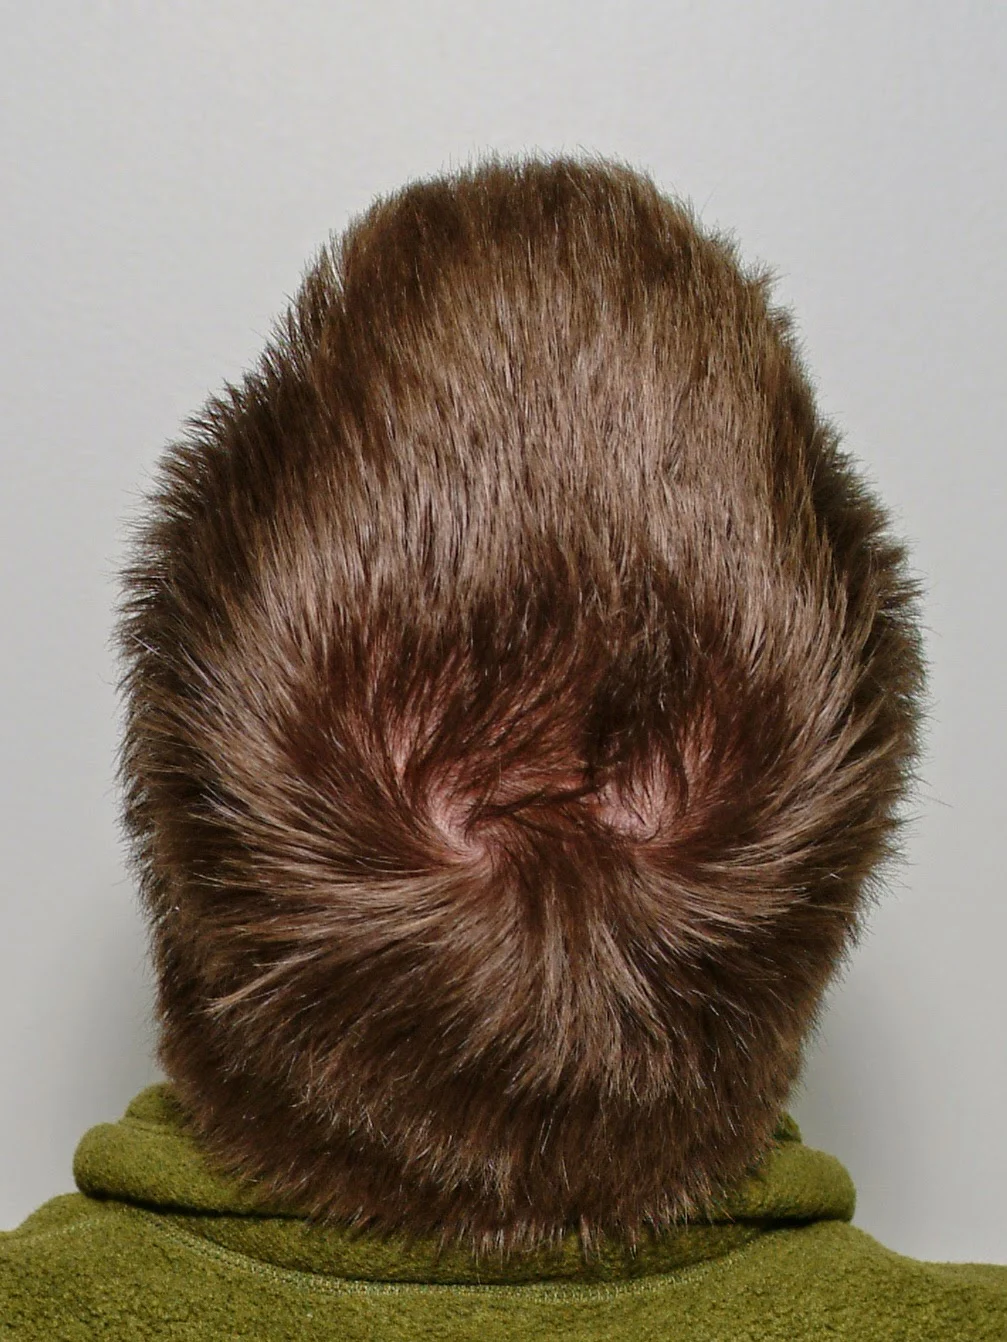 sore scalp hair loss